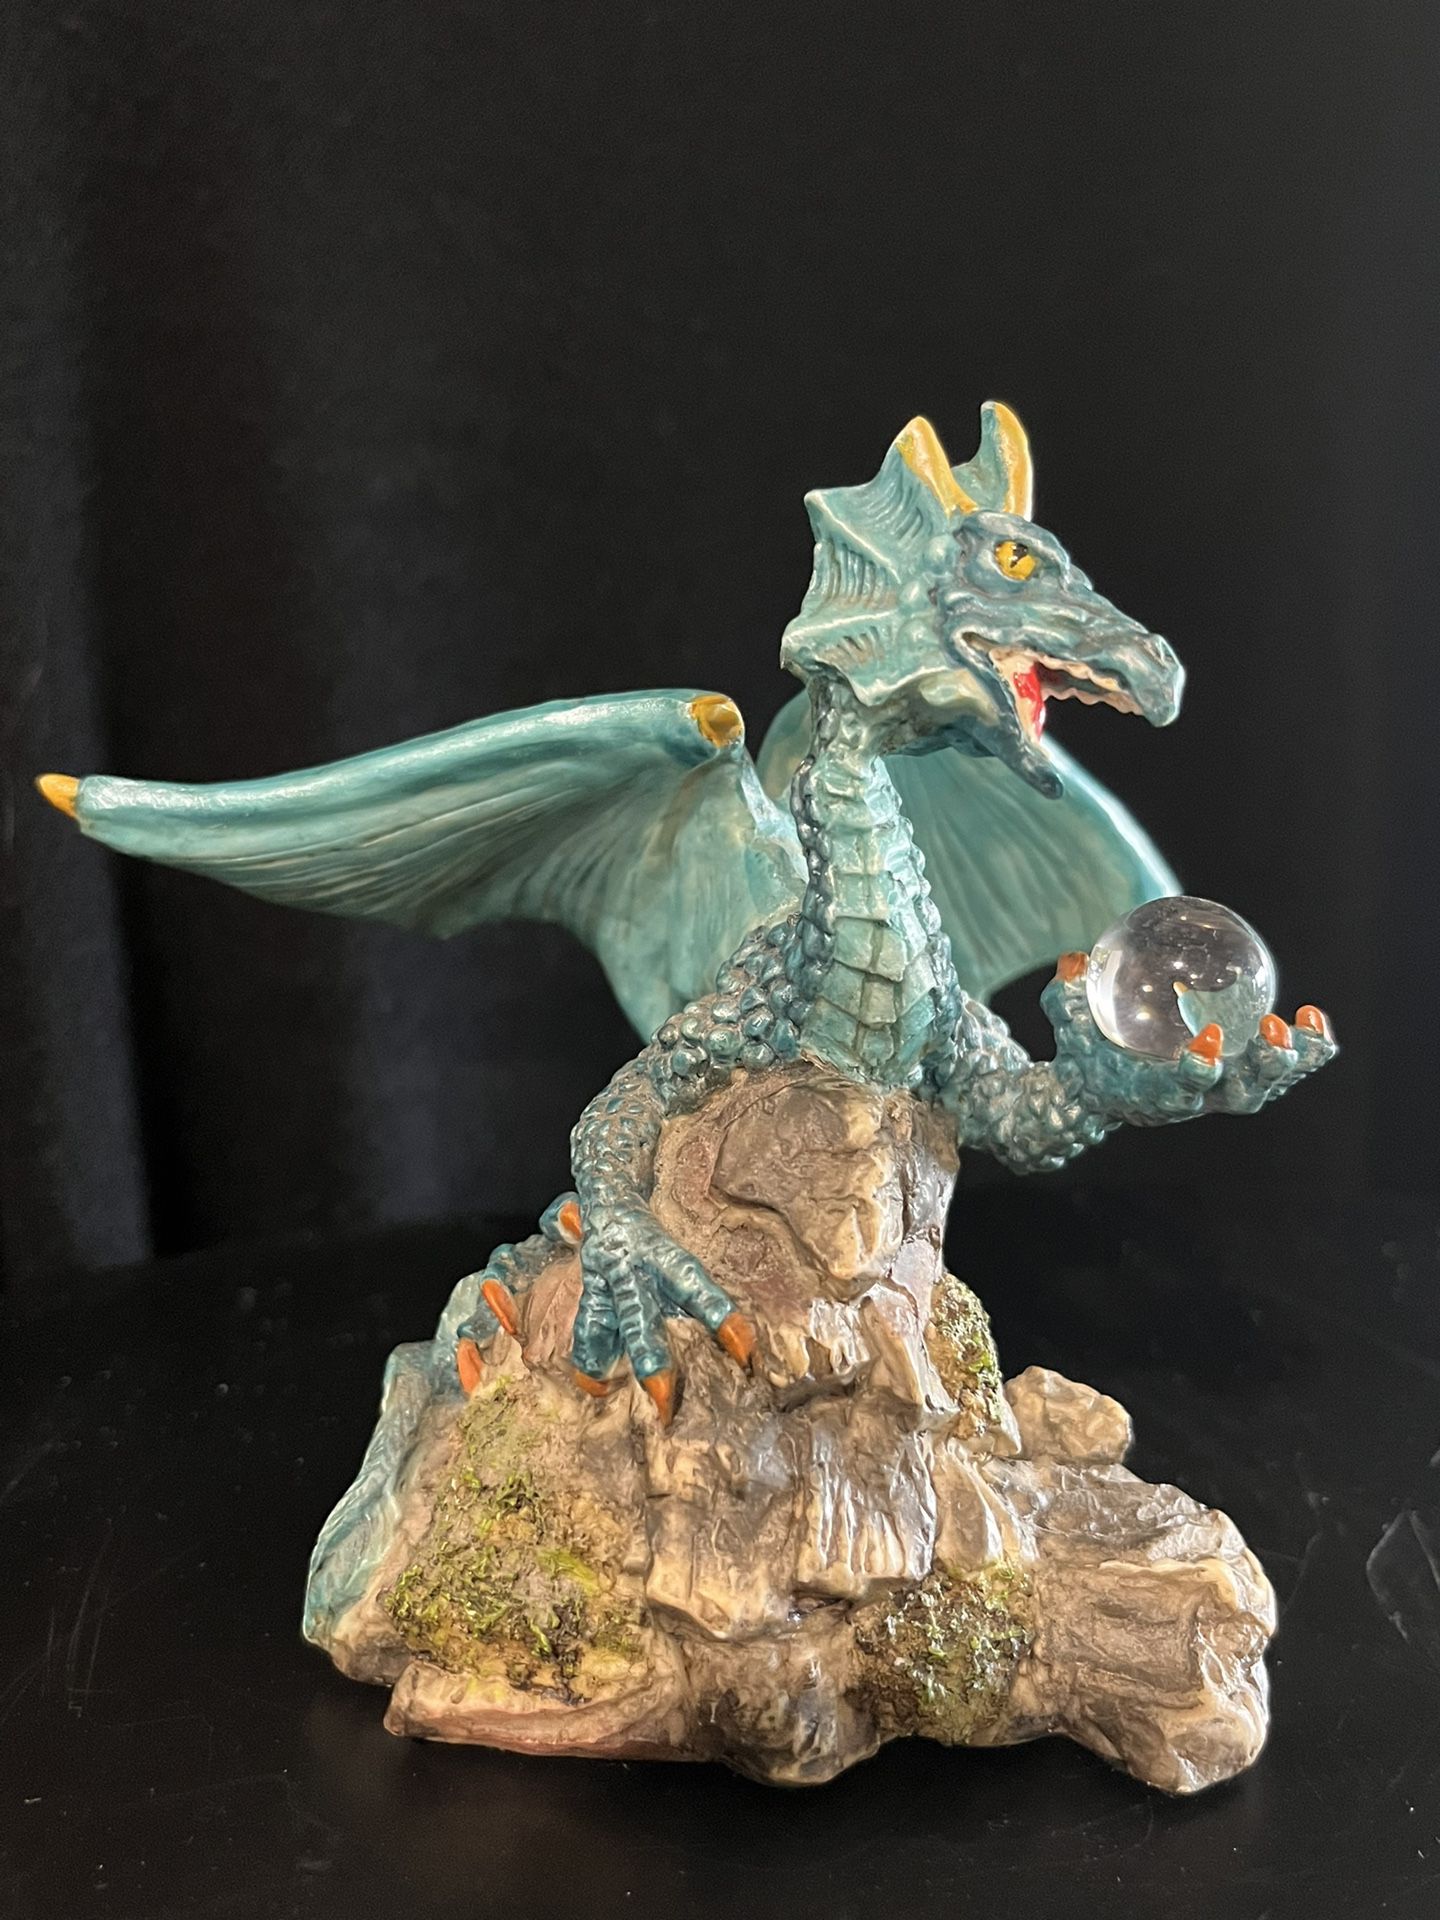 Vintage Resin Dragon With Crystal Ball Figurine